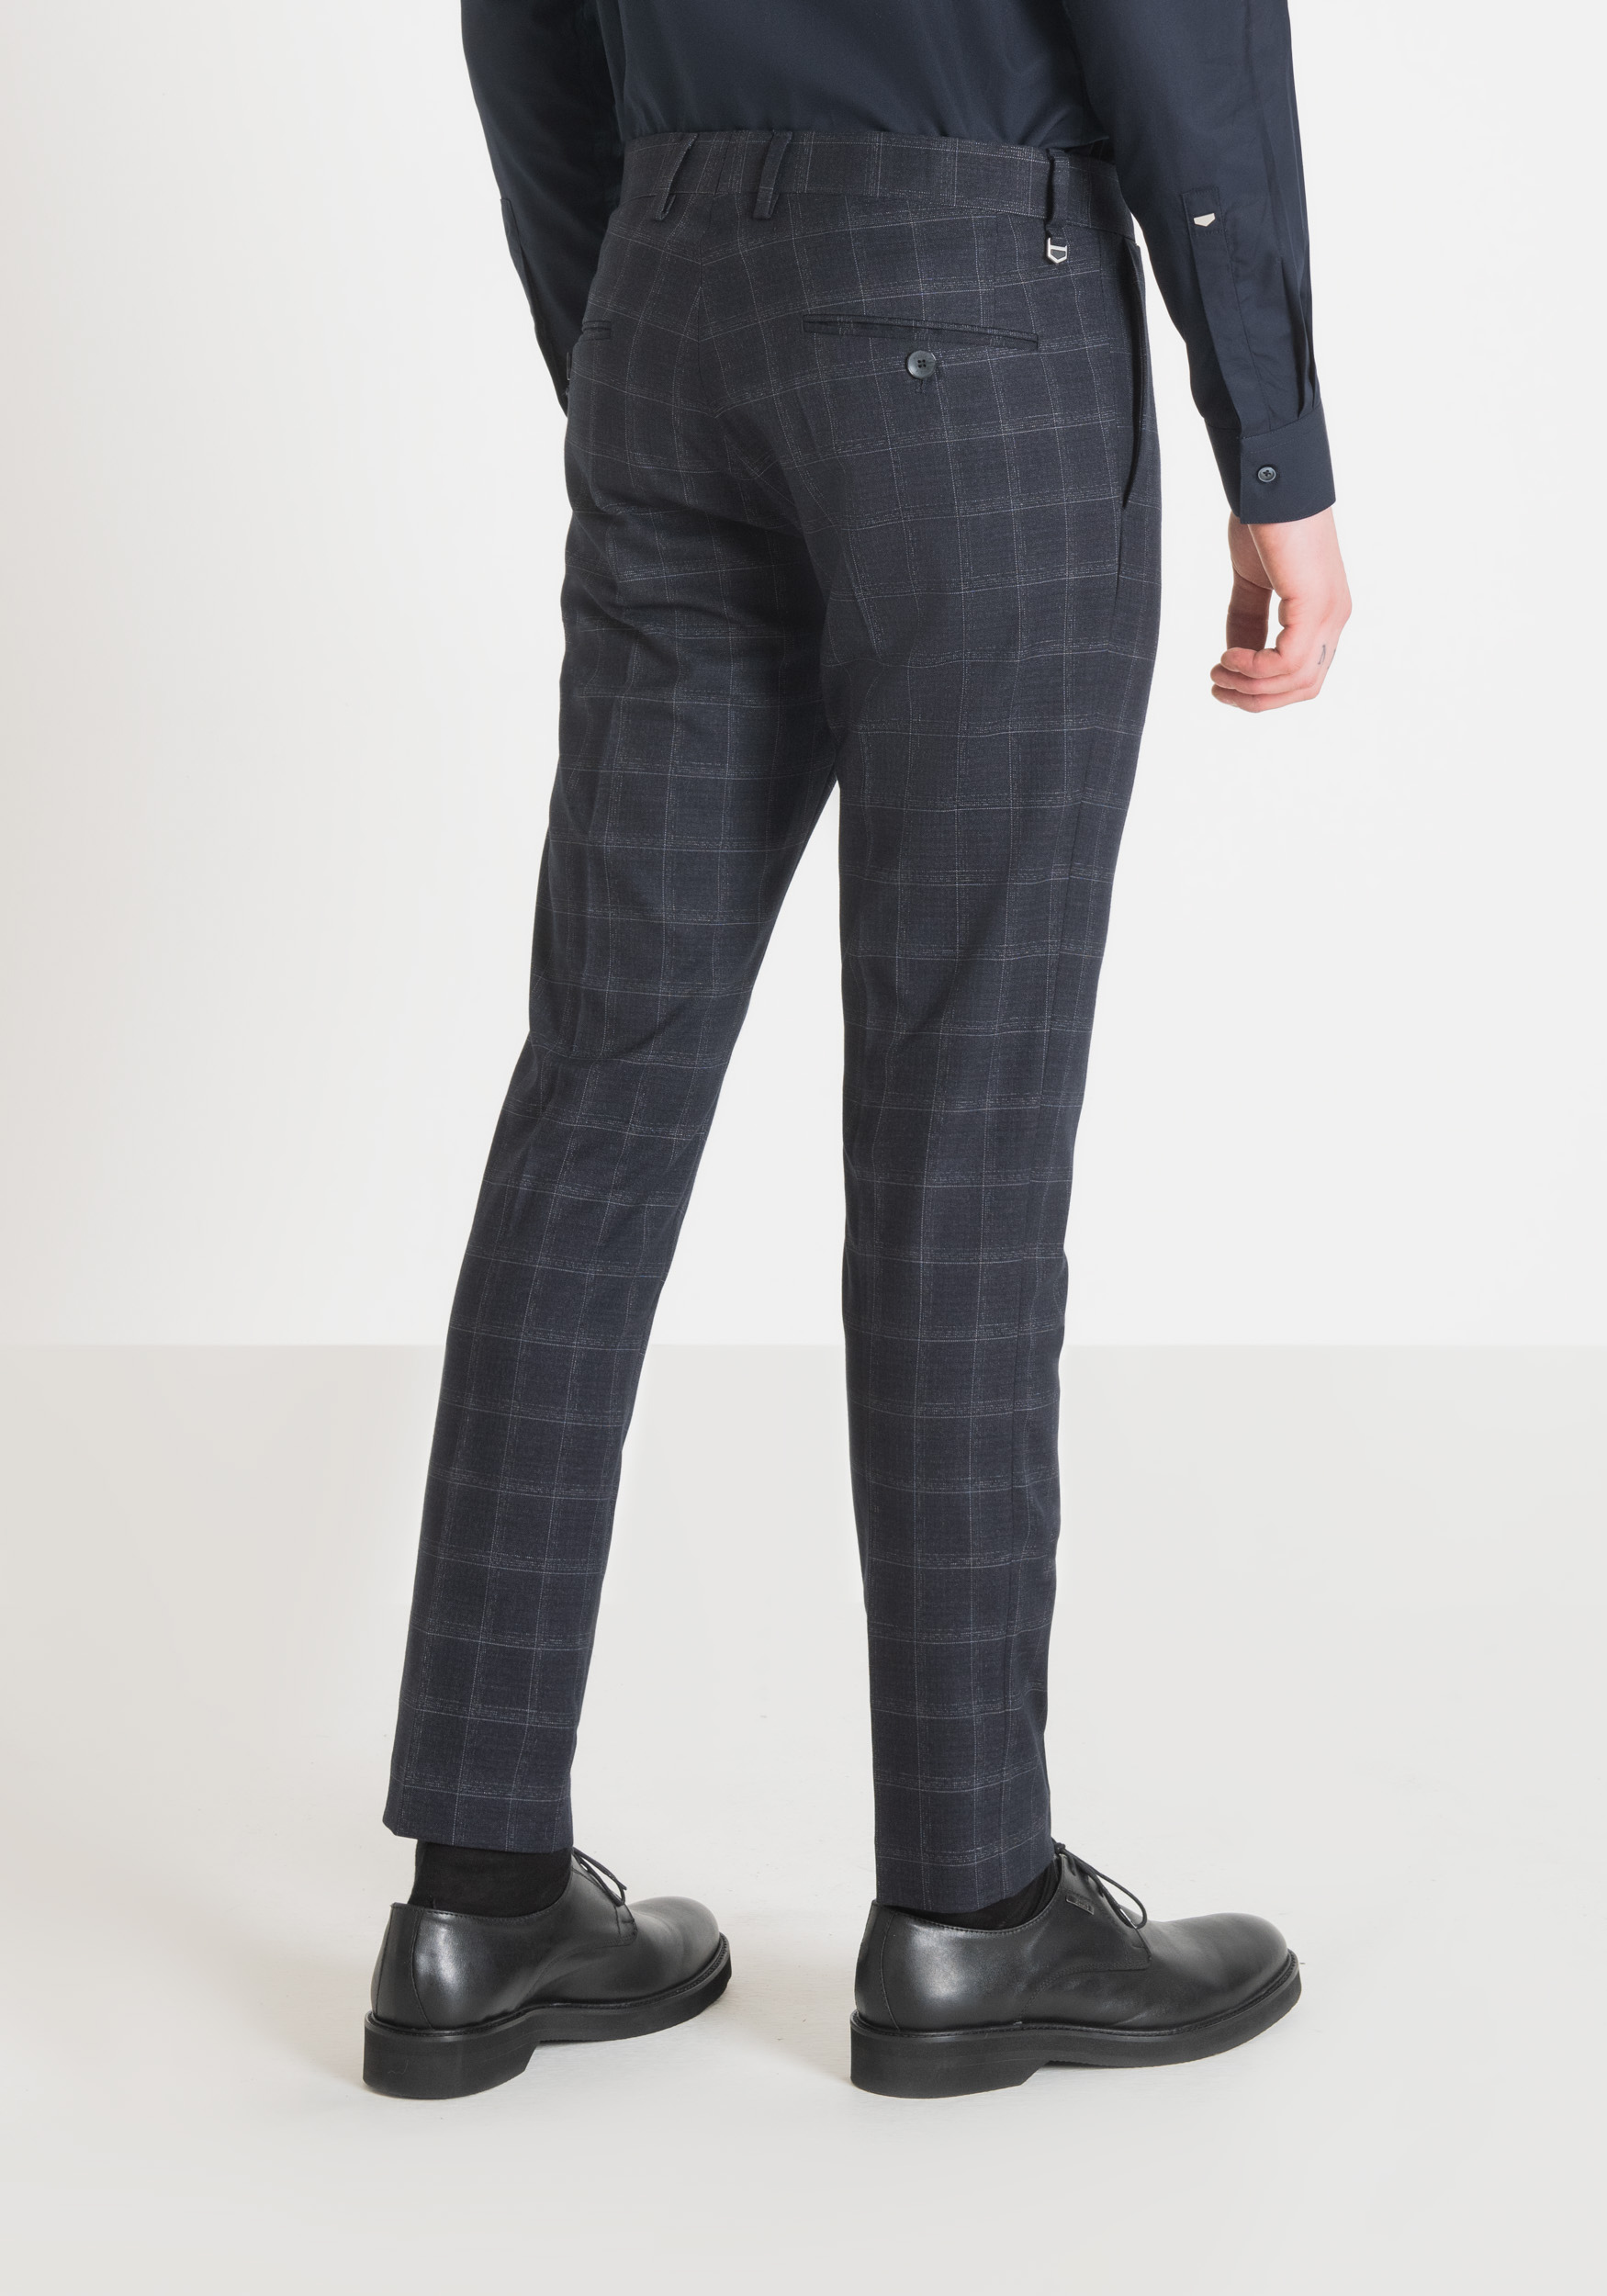 Antony Morato Pantalon Slim Fit Bonnie En Tissu De Viscose Melangee Elastique Avec Motif A Carreaux Encre Bleu | Homme Pantalons